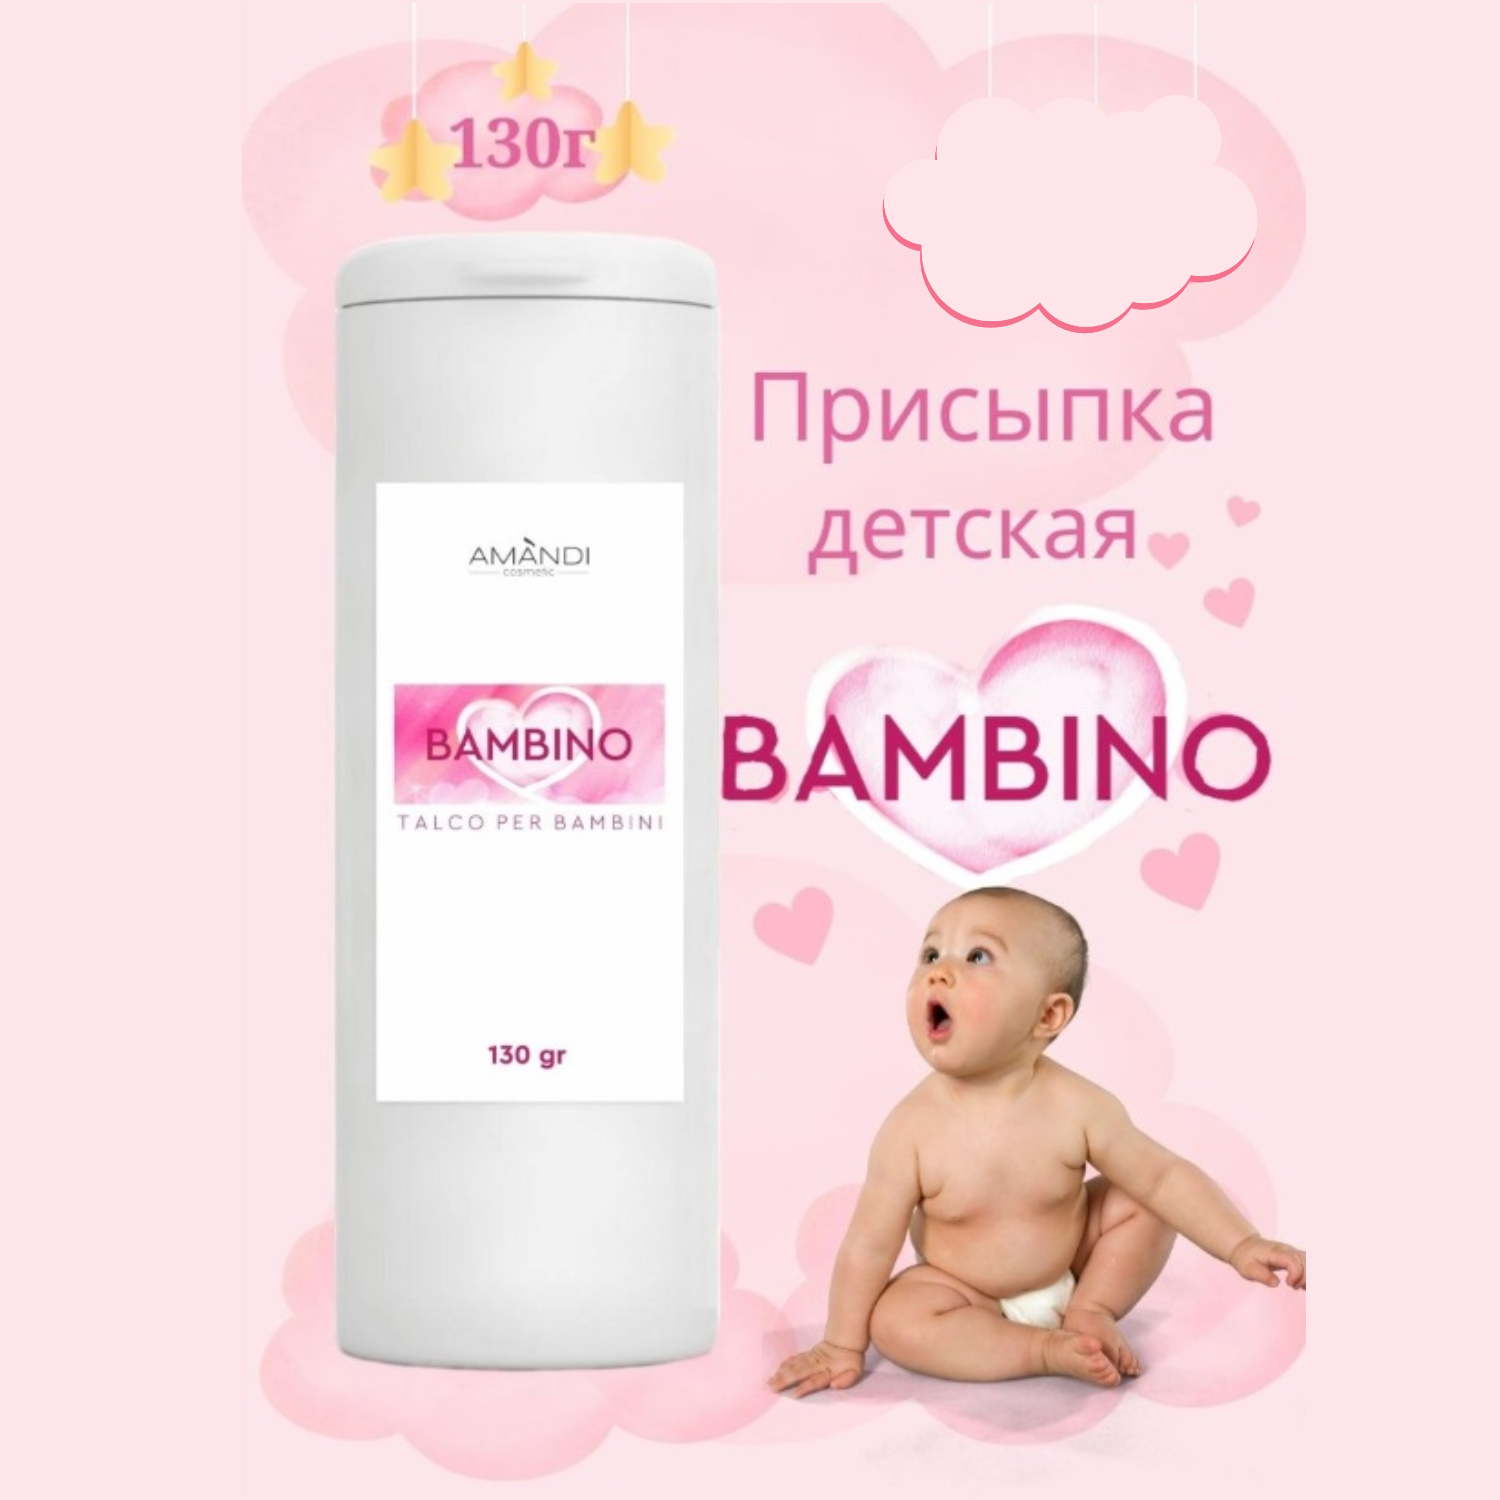 Присыпка детская AMANDI BAMBINO без отдушек 130 грамм - фото 2